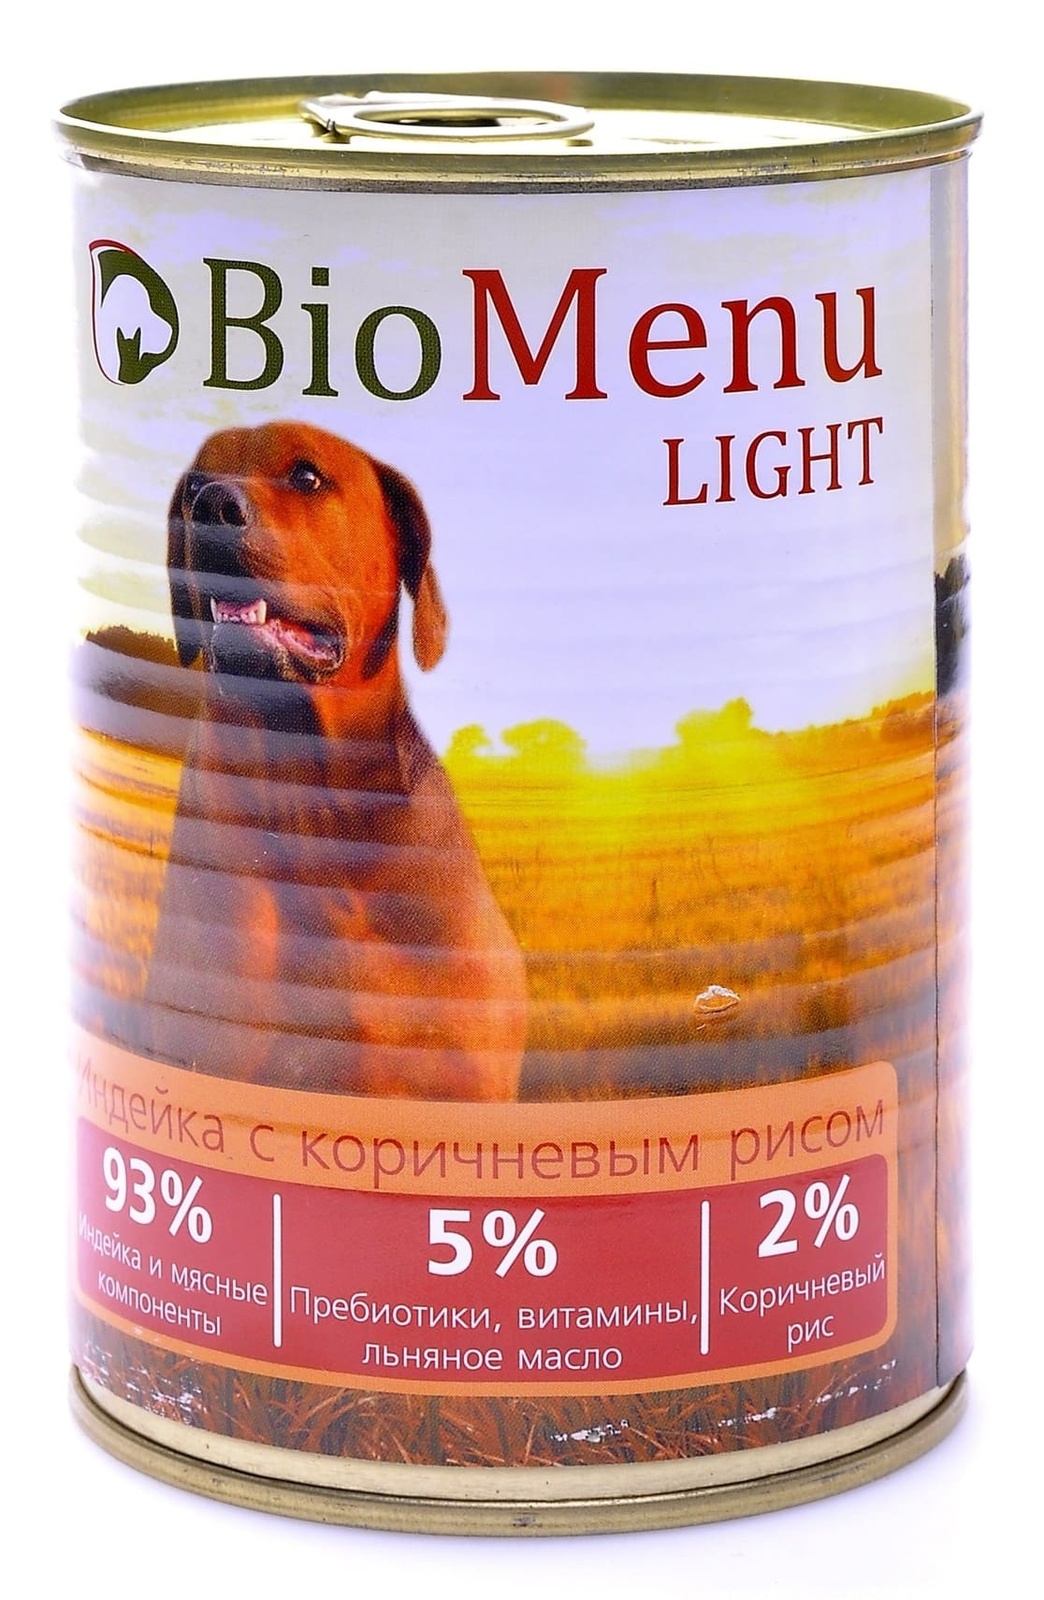 BioMenu BioMenu консервы для собак низкокалорийные с индейкой и коричневым рисом (100 г) biomenu biomenu консервы для собак цыпленок с ананасом 100 г